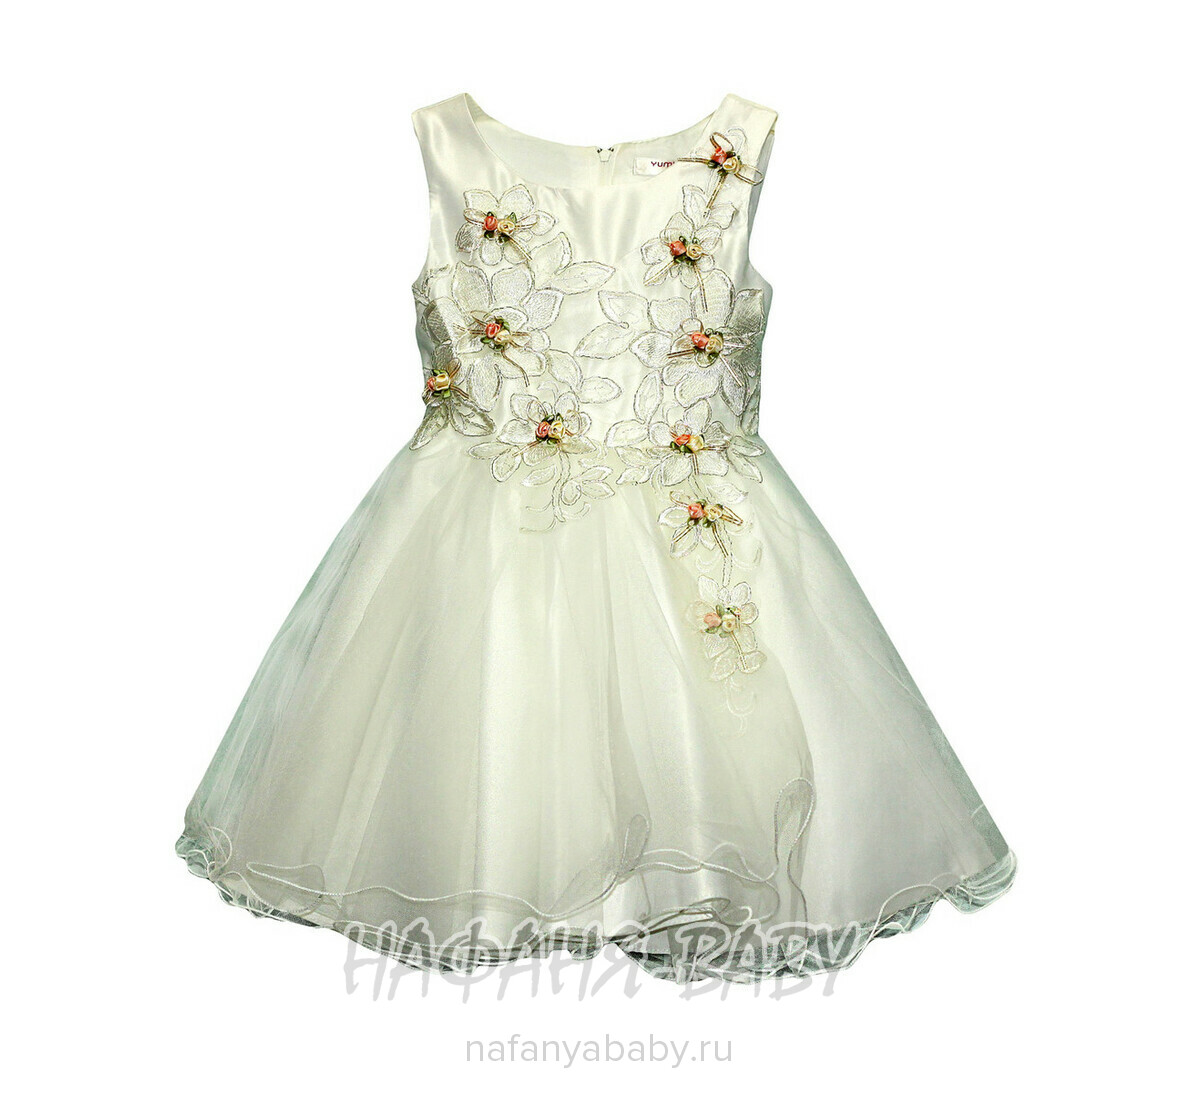 Детское нарядное платье AZ.Buka, купить в интернет магазине Нафаня. арт: 7211.